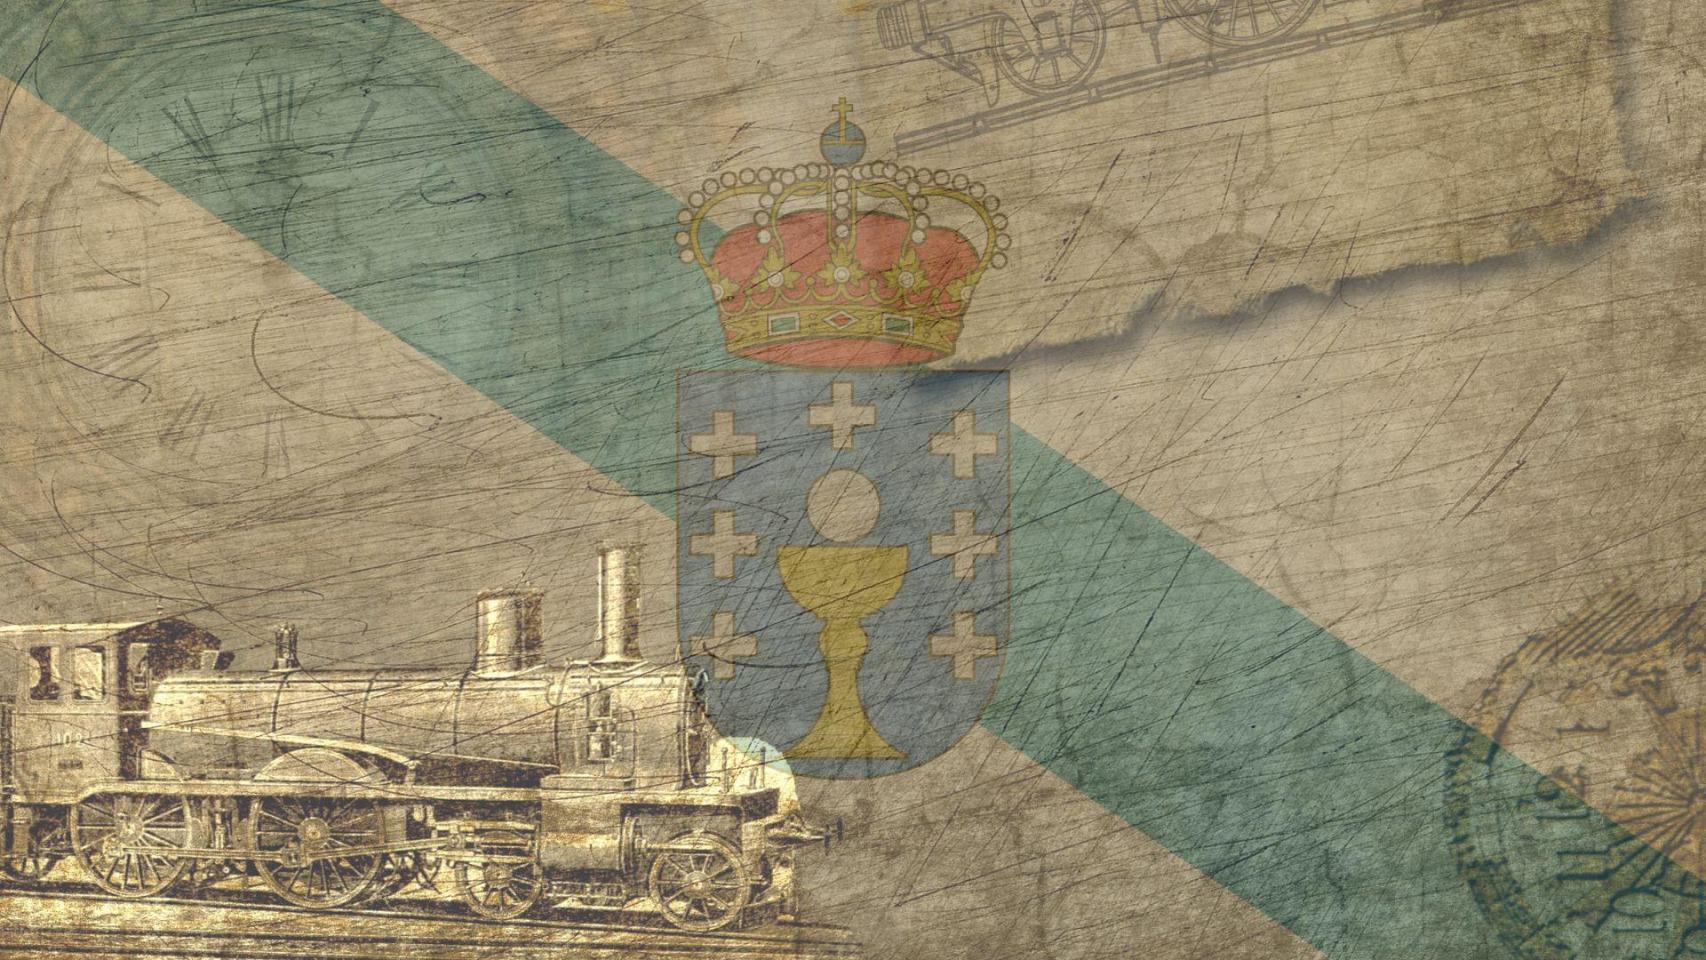 La conspiración que trajo a Galicia el ferrocarril más audaz, complicado y costoso jamás construido